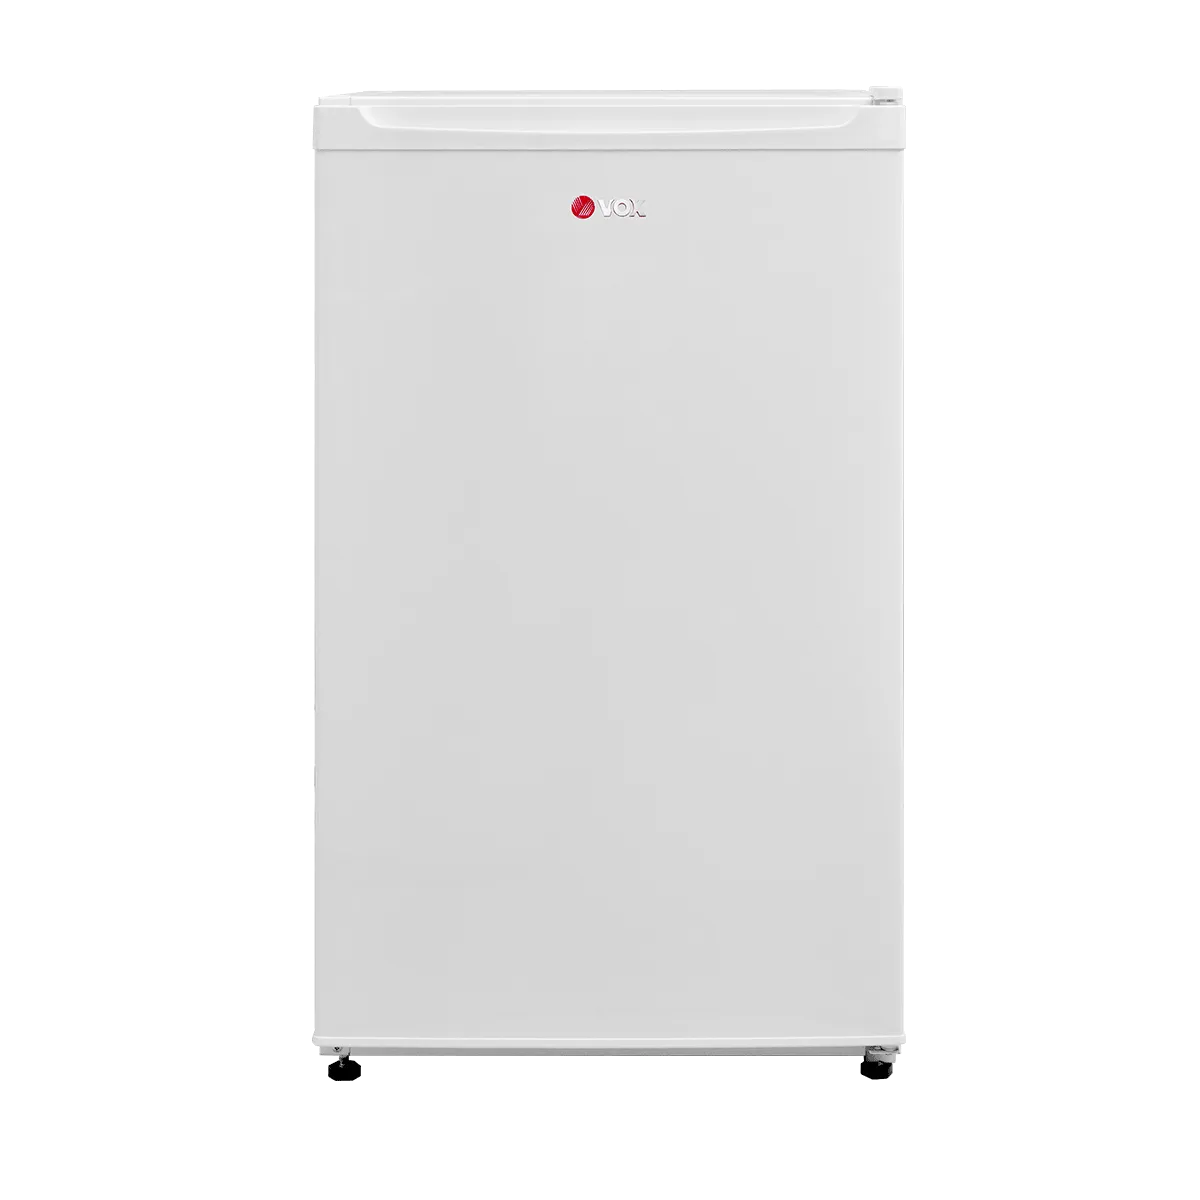 Refrigerator KS 1100 F 